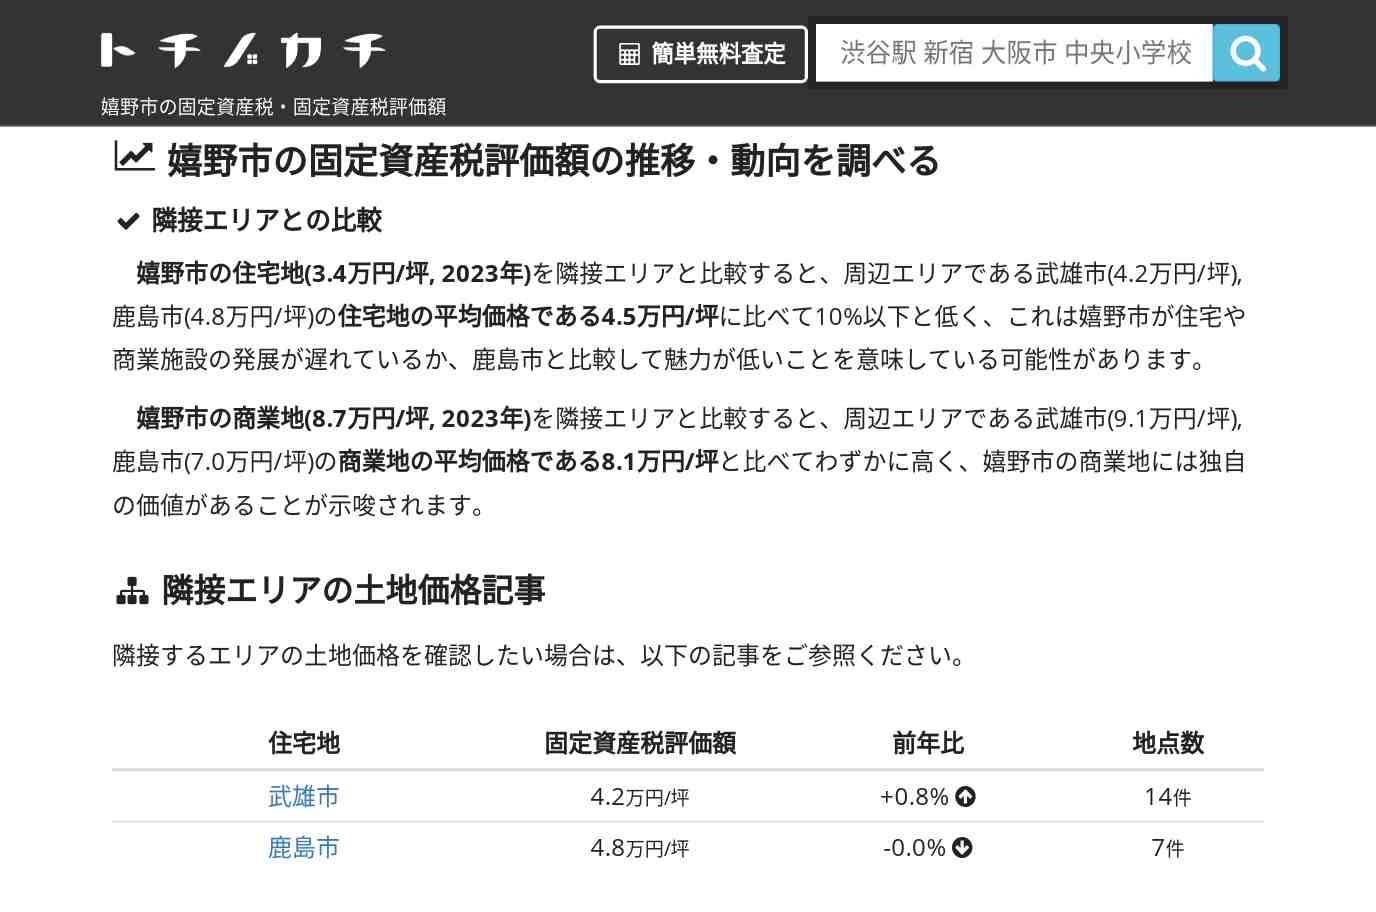 吉田小学校(佐賀県 嬉野市)周辺の固定資産税・固定資産税評価額 | トチノカチ